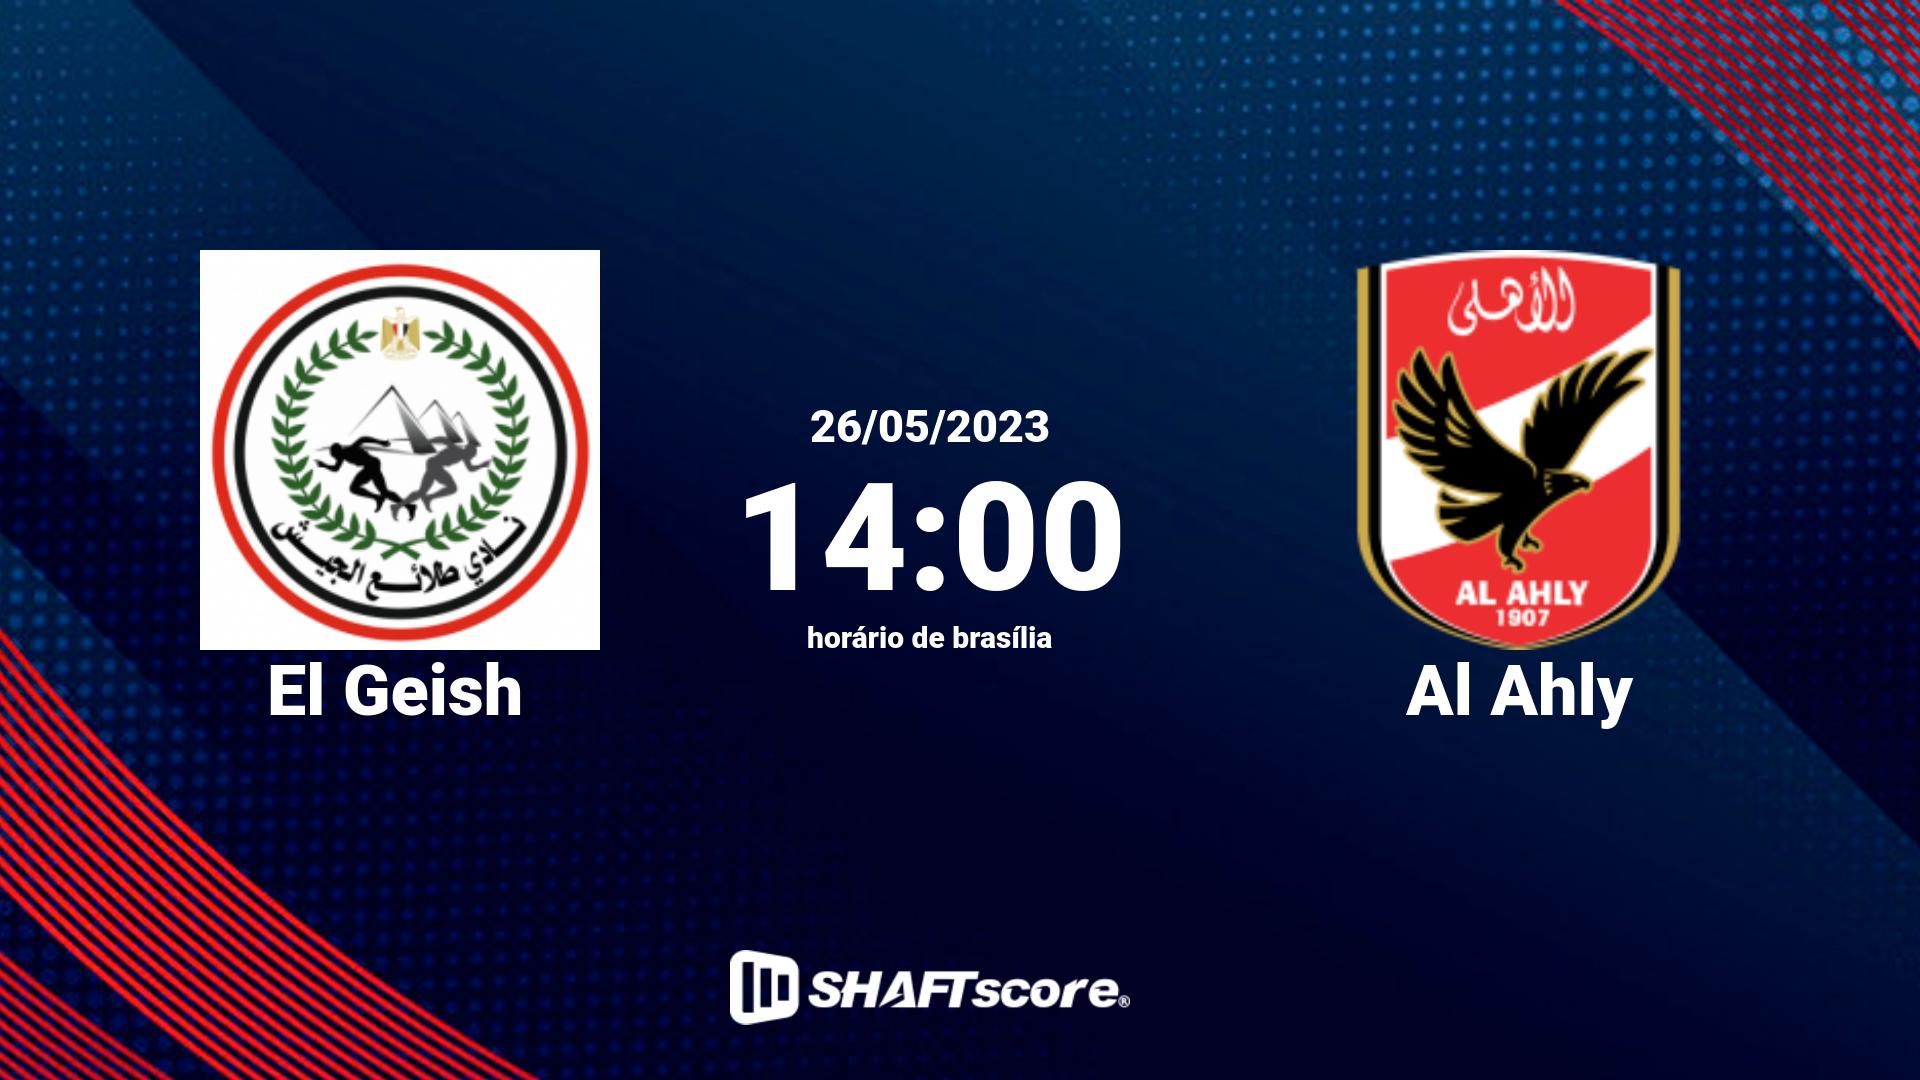 Estatísticas do jogo El Geish vs Al Ahly 26.05 14:00